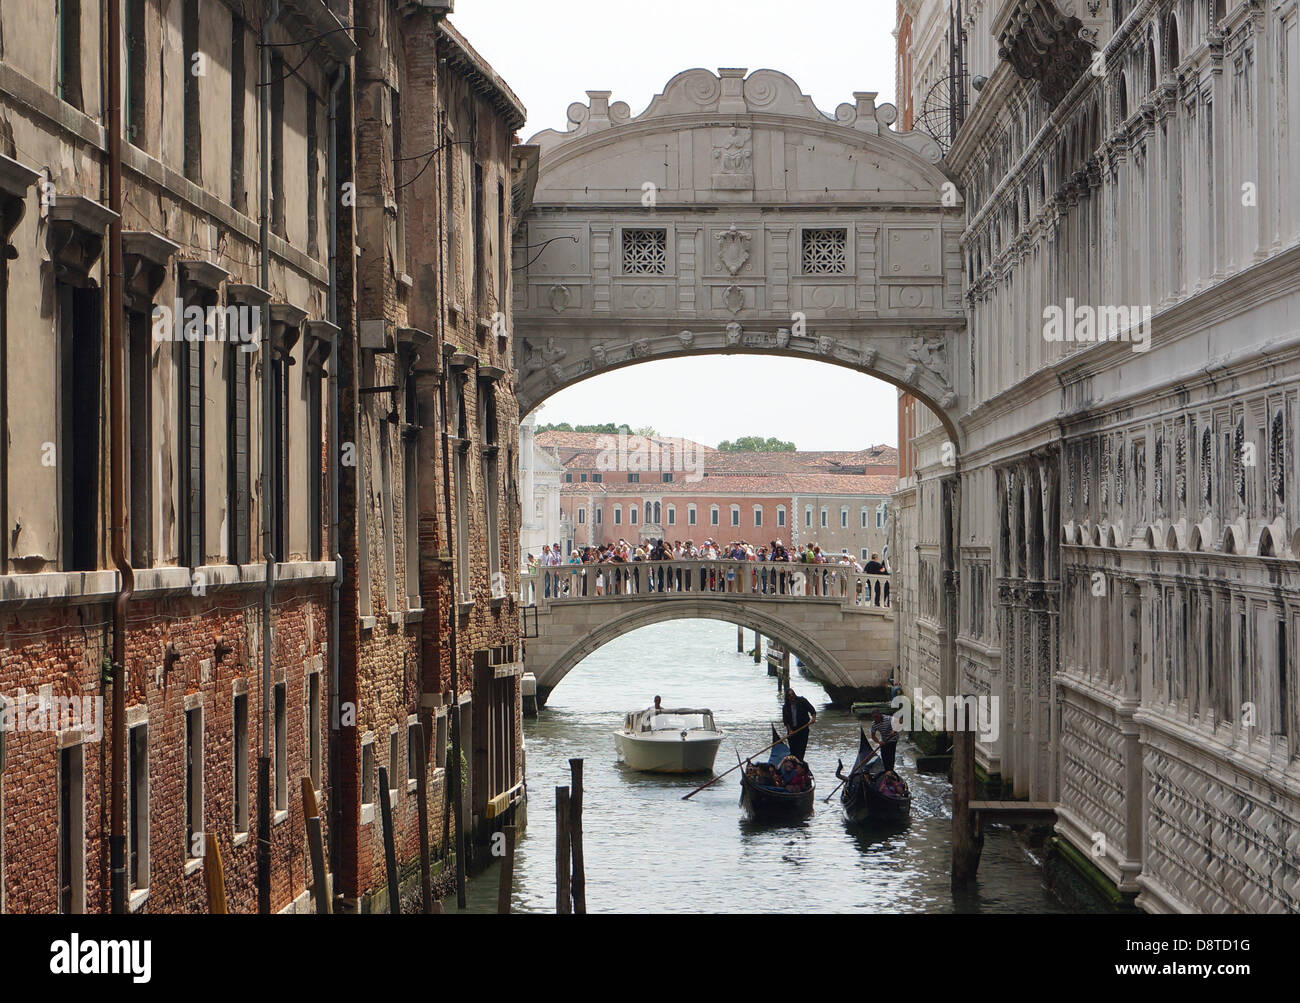 Gondole viaggiare accanto a Palazzo Ducale (r) sotto il Ponte dei Sospiri (Ponte dei Sospiri) a Venezia, Italia, il 3 maggio 2013. Foto: Soeren Stache Foto Stock